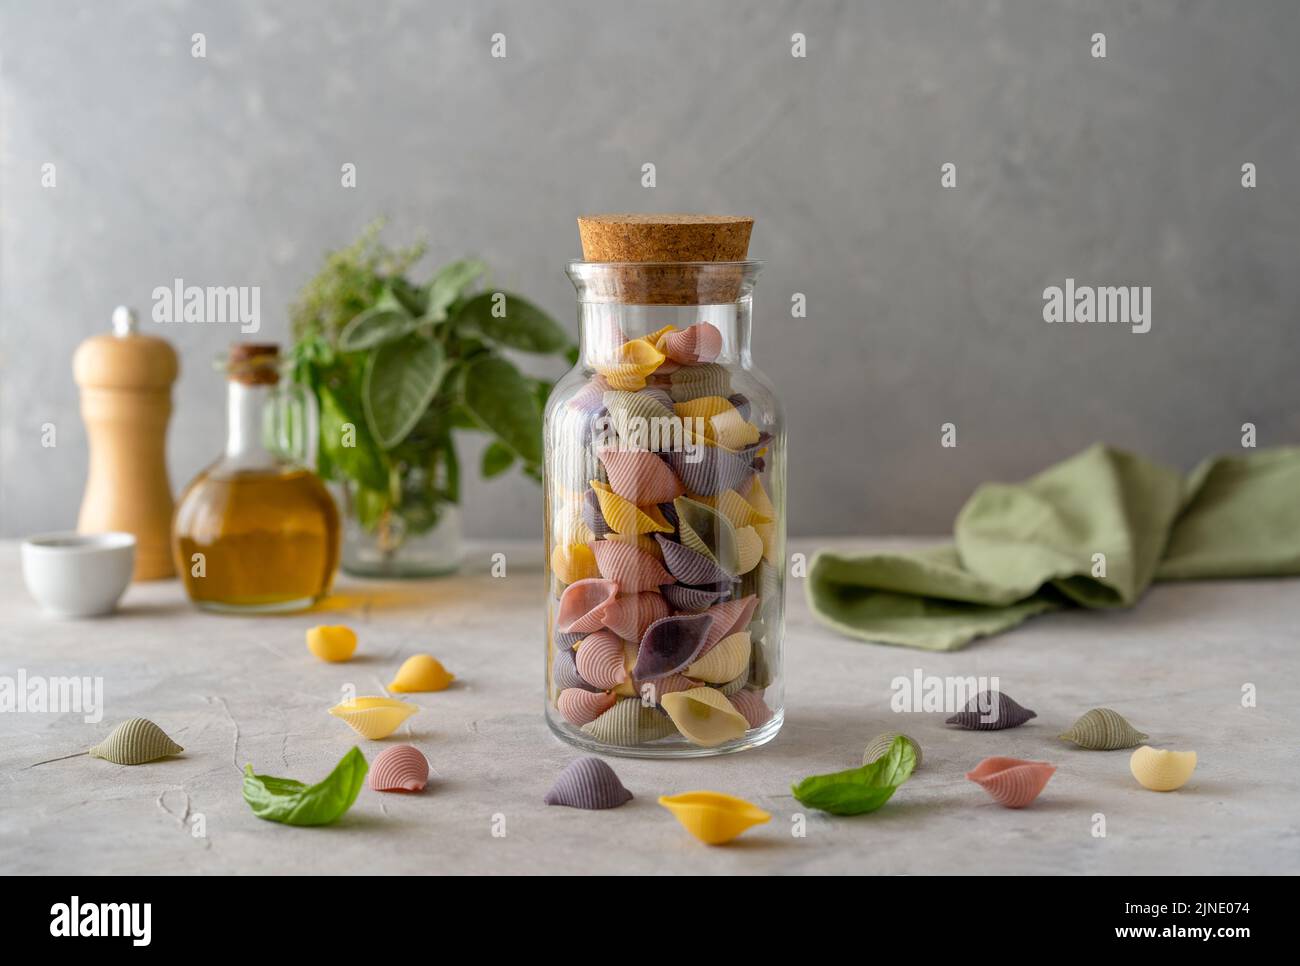 Mehrfarbige italienische Pasta Conchiglie oder Muscheln in Glasflasche, Olivenöl, Olivenzweig. Konkreter Hintergrund Stockfoto